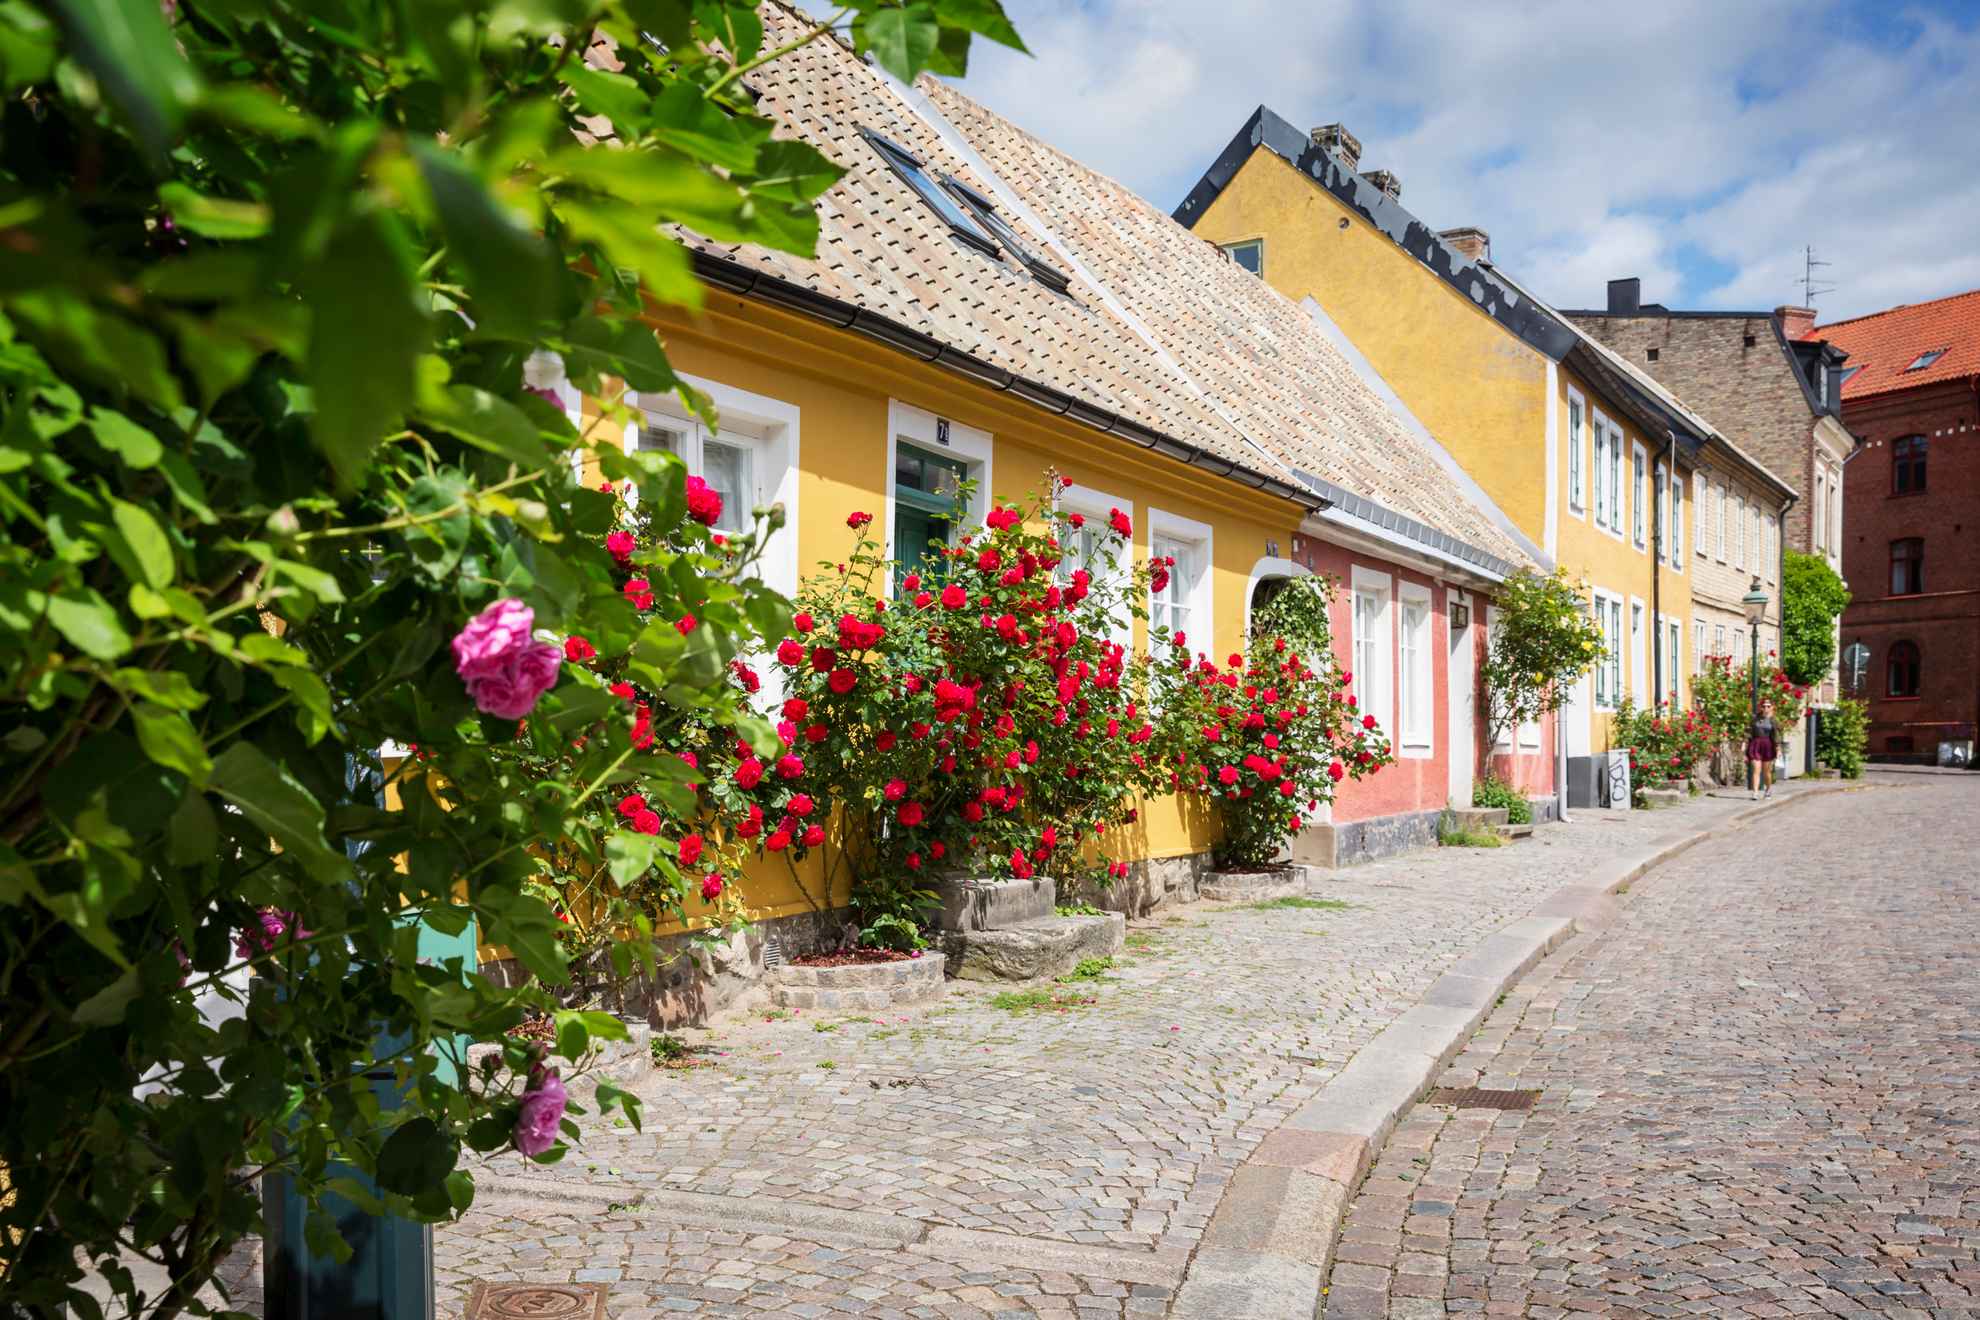 Bunte Häuser mit Rosenbüchen vor der Tür in einer alten gepflasterten Straße in Lund.